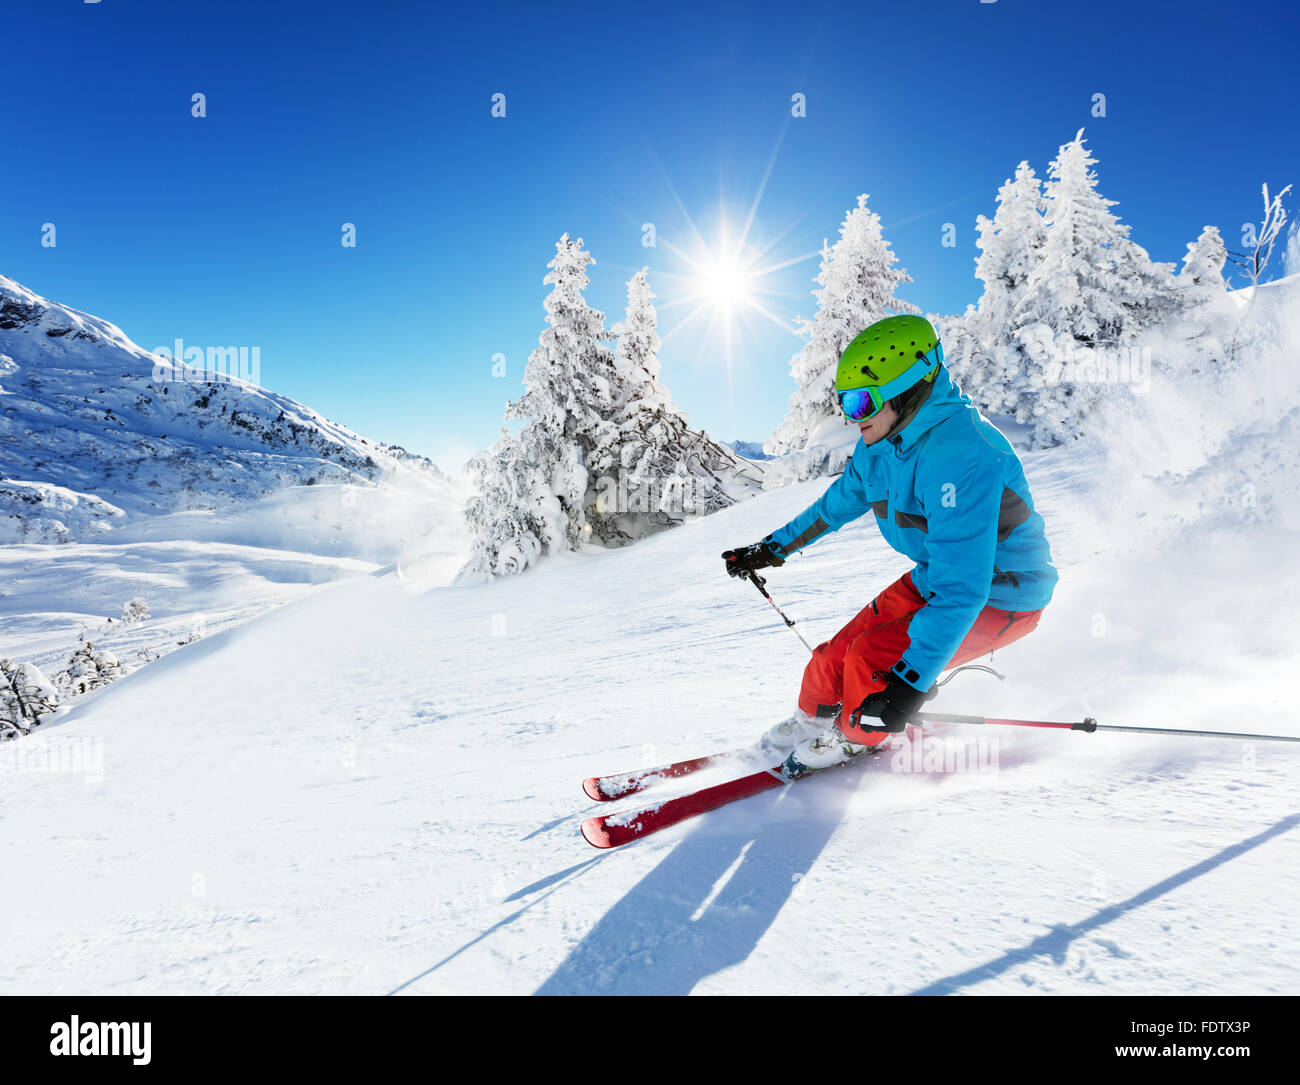 Man skier in Alps Stock Photo